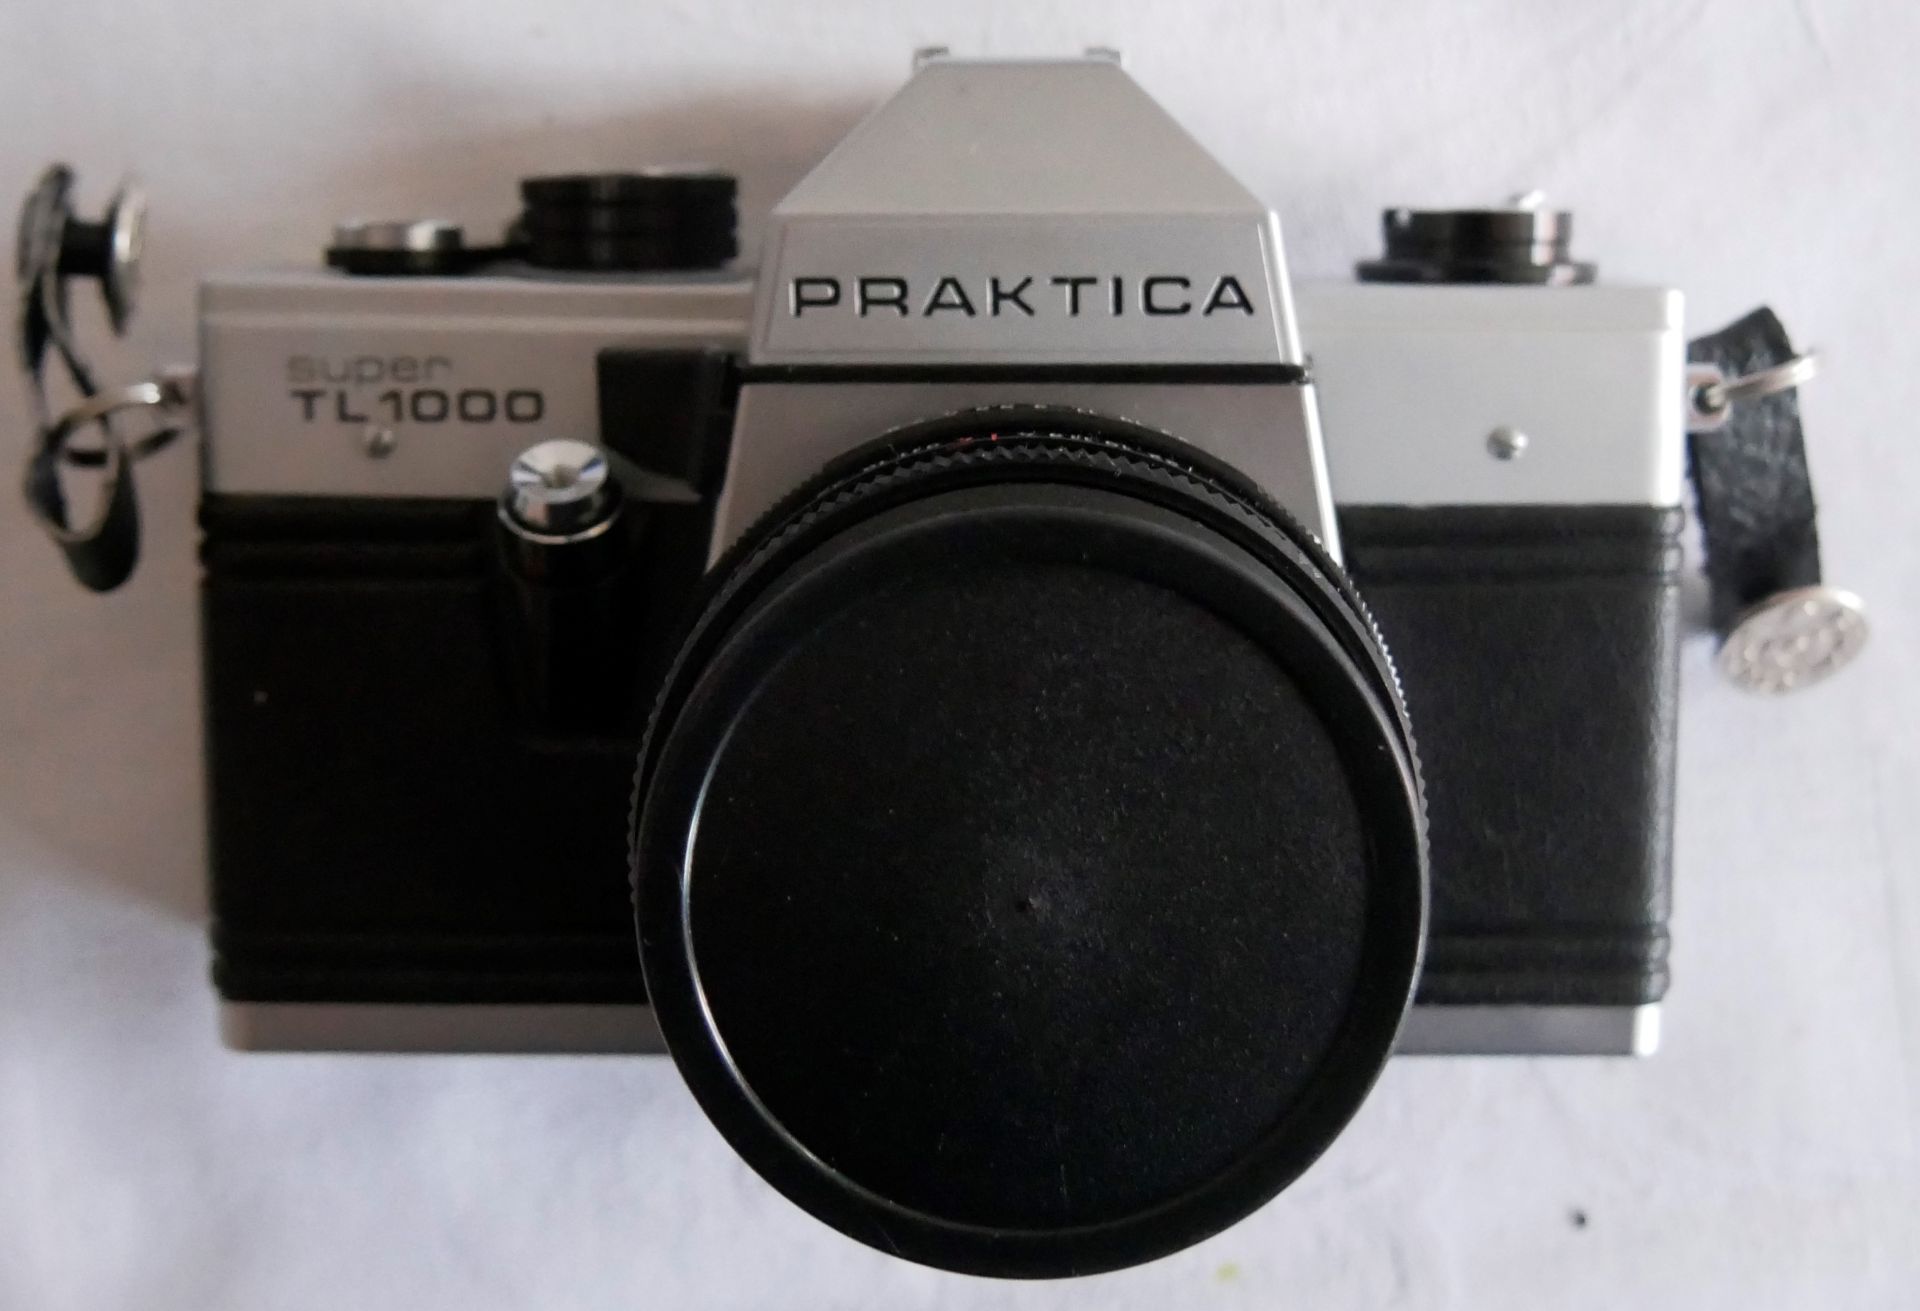 1 Kamera Praktica dabei auch 1 Objektiv sowie 1 Pentax Kamera im Etui - Bild 3 aus 3